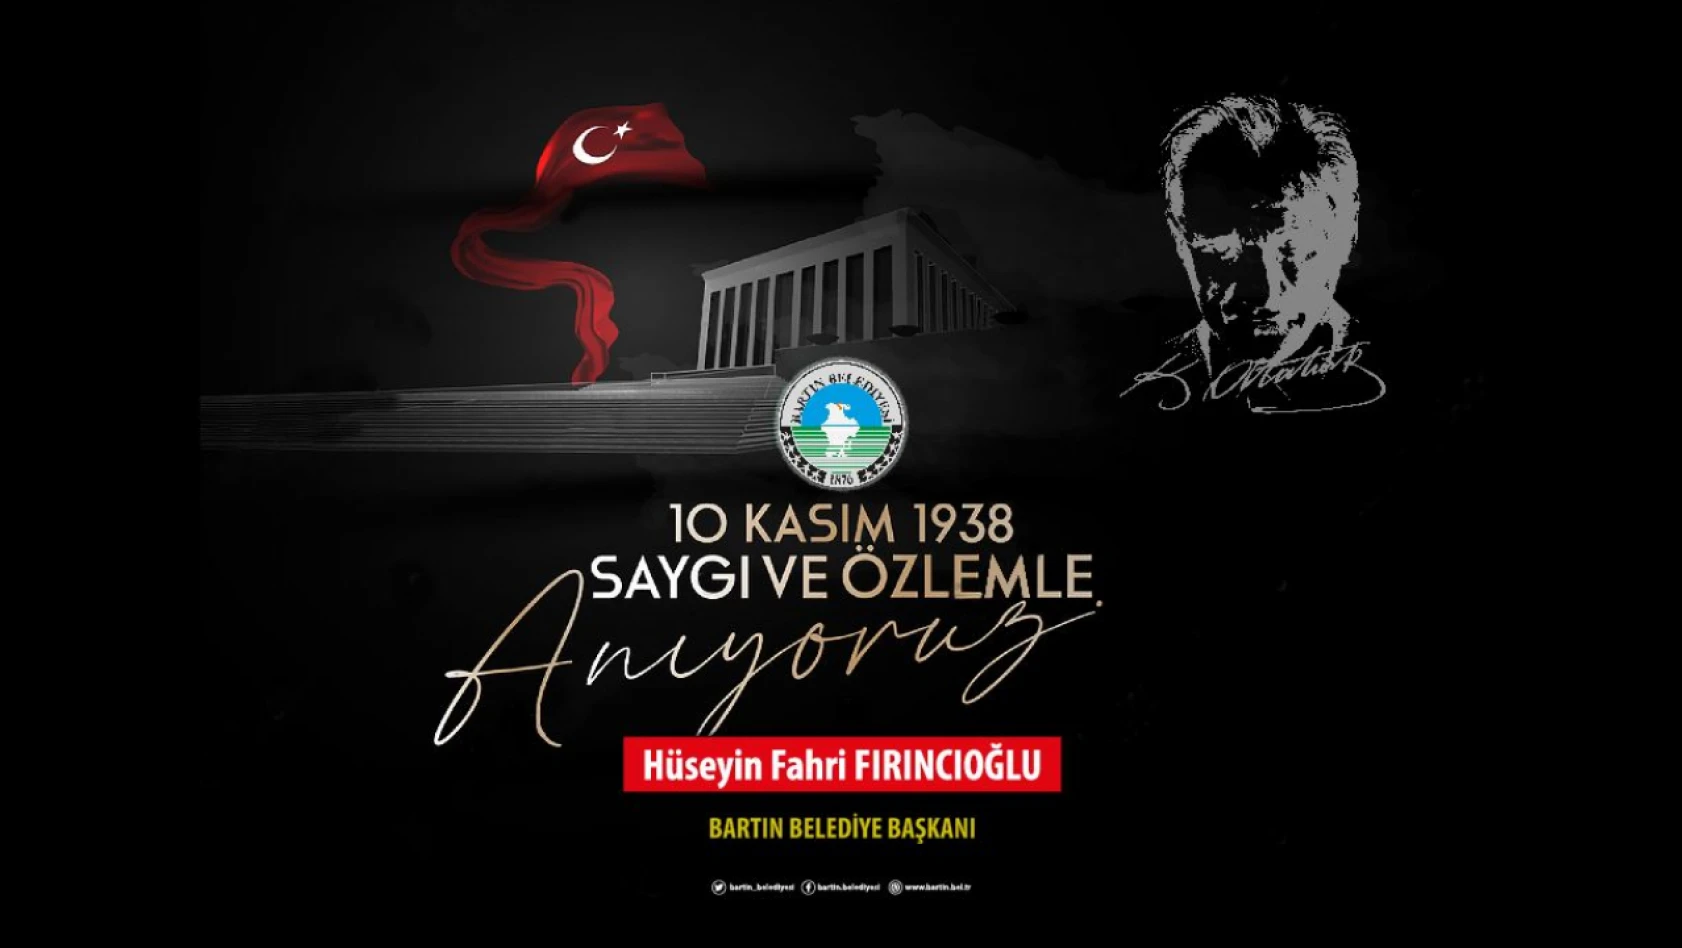 Fırıncıoğlu '57 yıllık ömrüne büyük bir milleti sığdırdı'